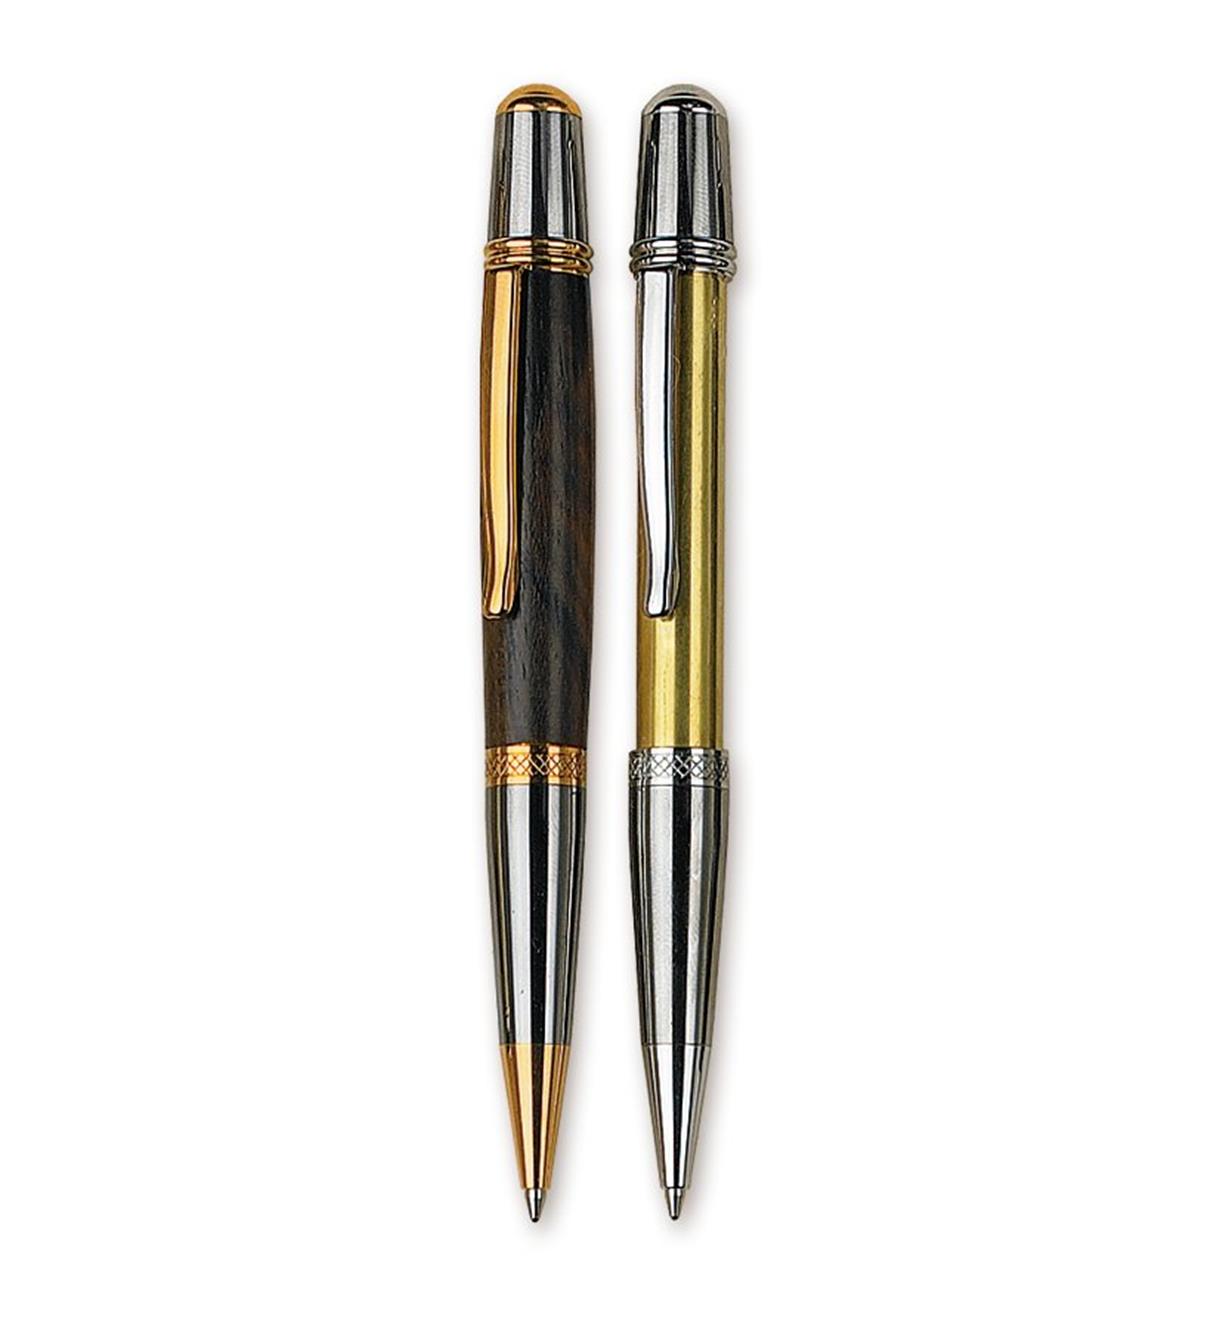 Sierra Two-Toned Ballpoint Pen Hardware